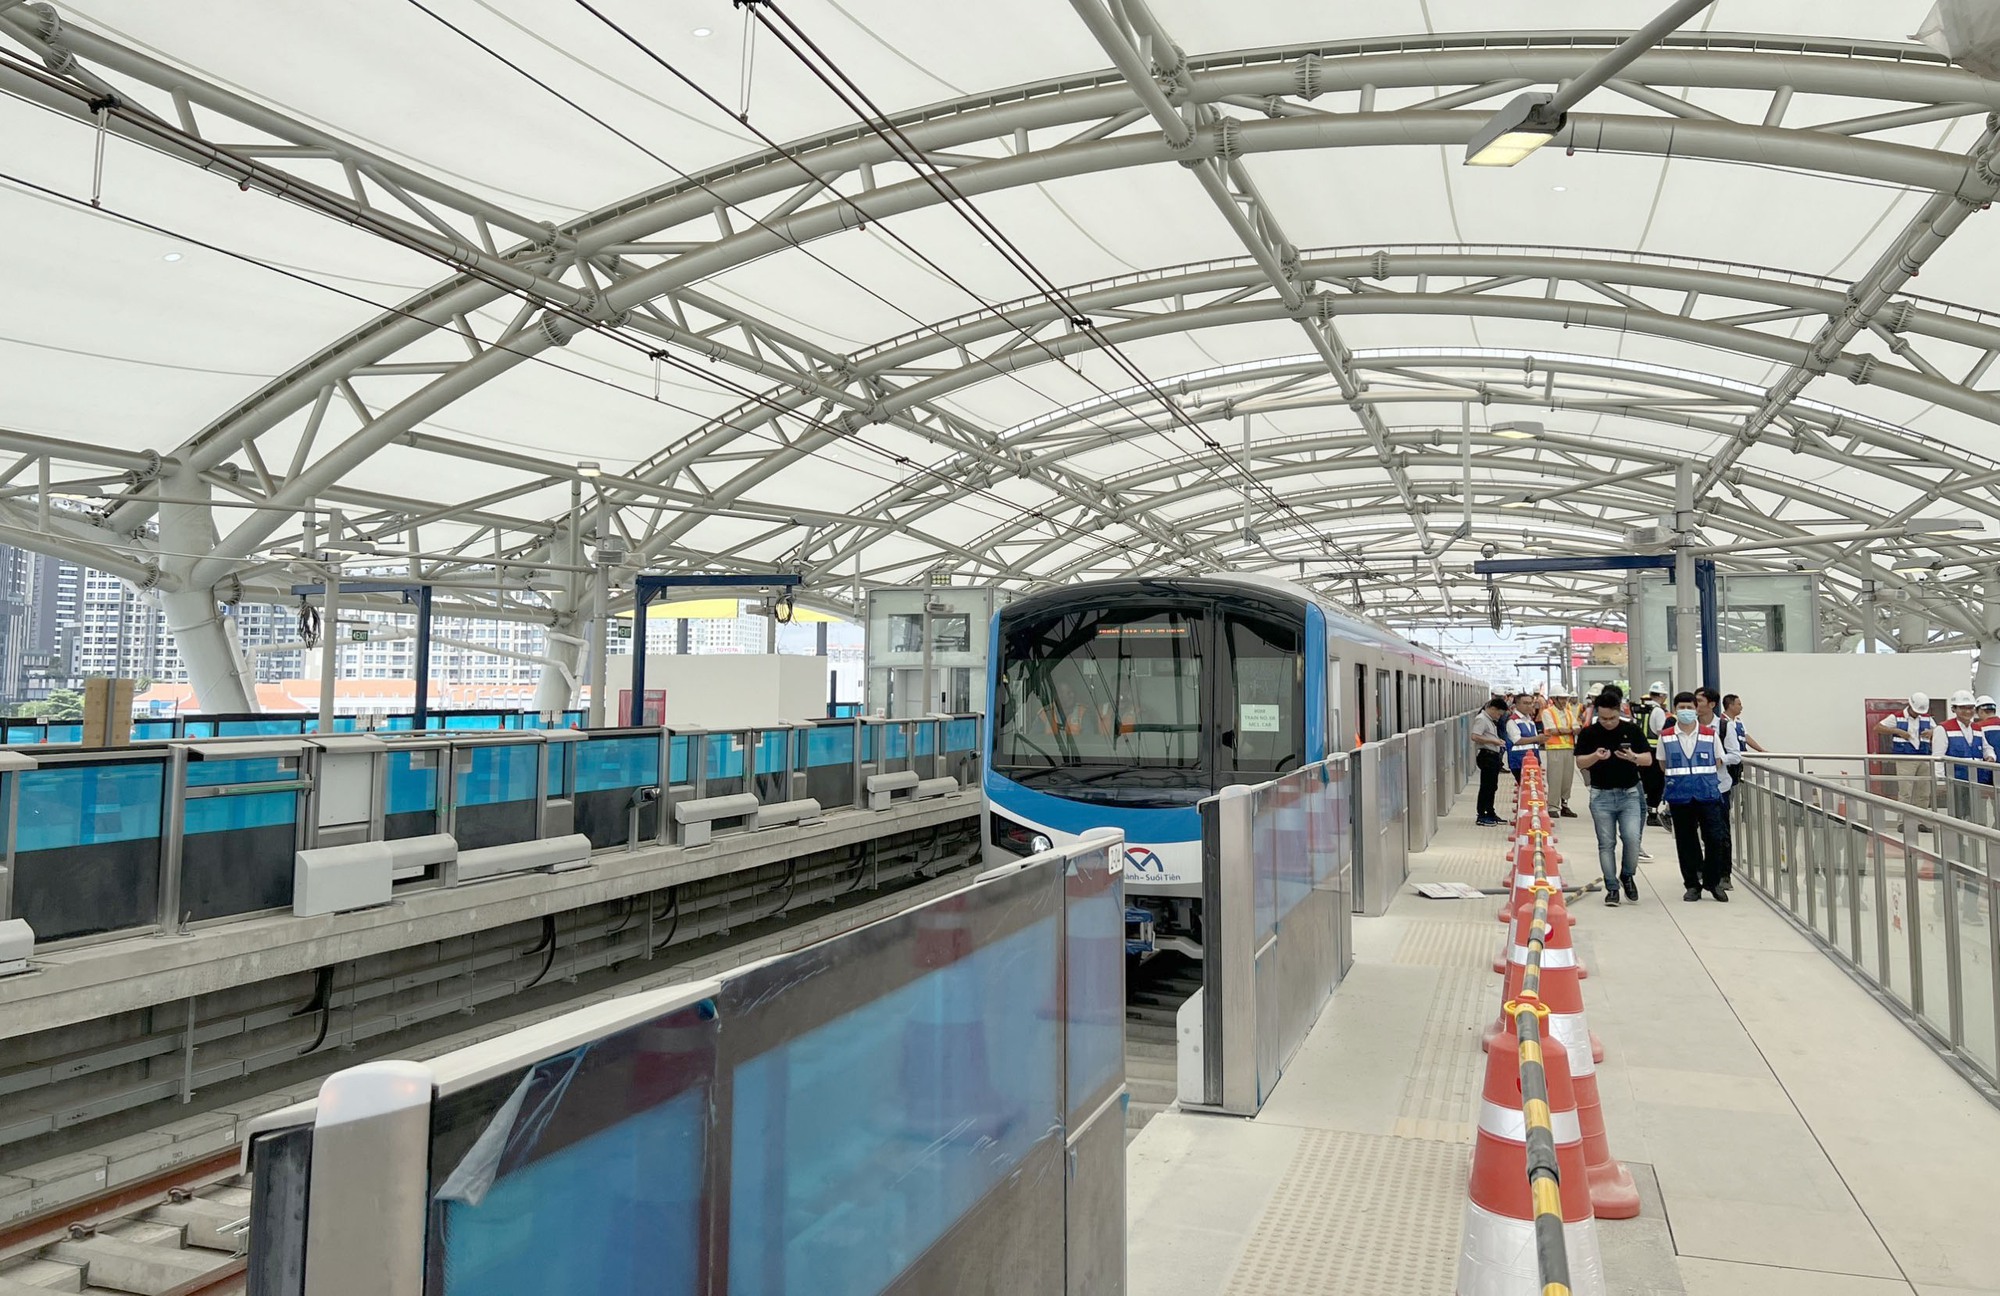 Video trải nghiệm trên tuyến metro Bến Thành - Suối Tiên - Ảnh 2.